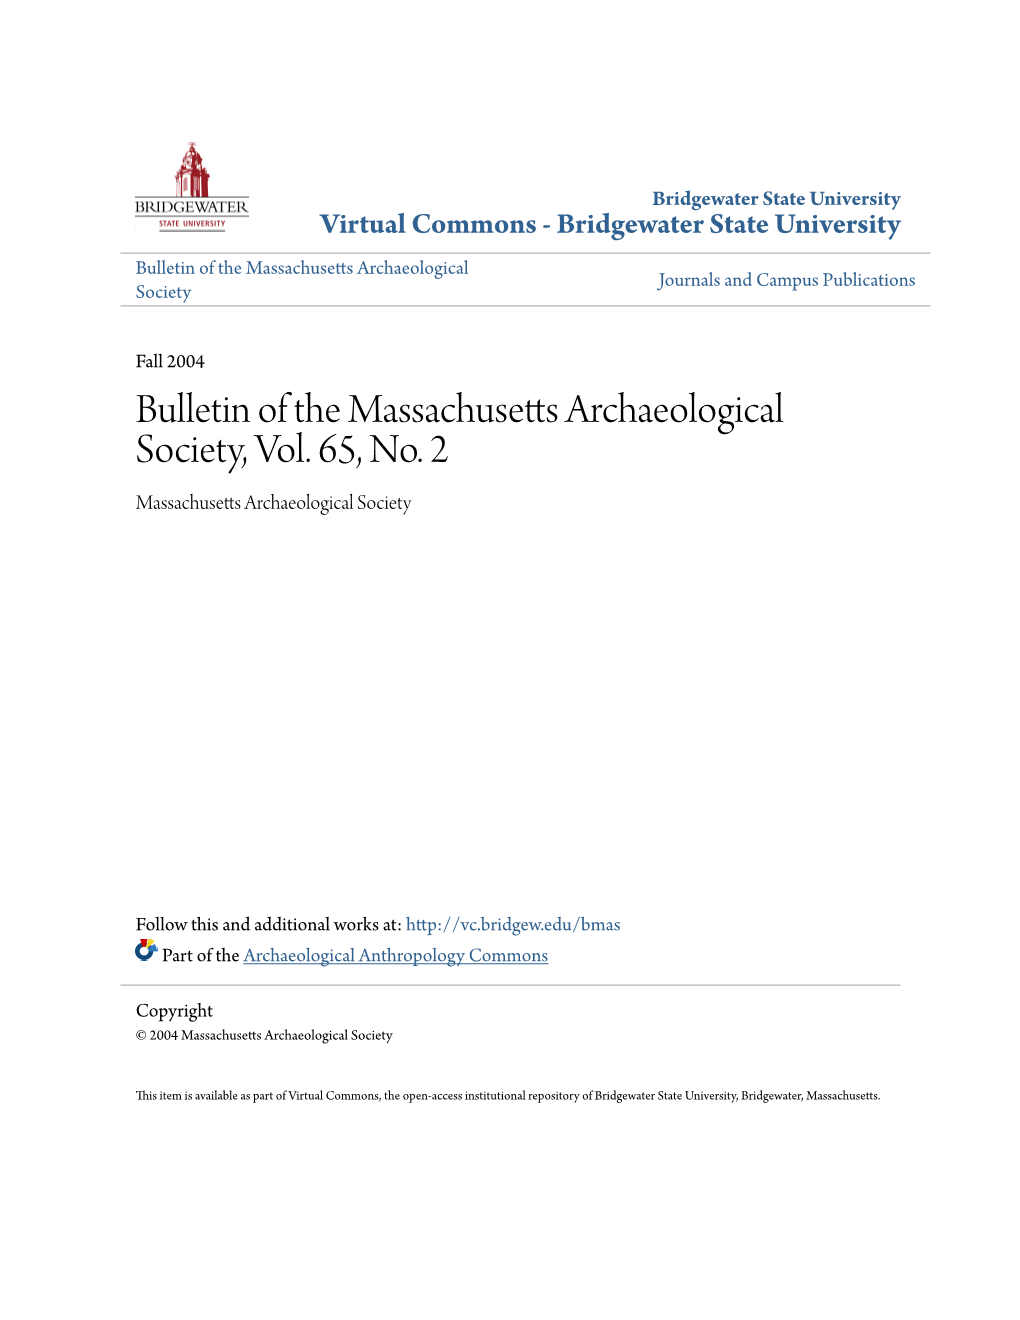 Bulletin of the Massachusetts Archaeological Society, Vol. 65, No. 2 Massachusetts Archaeological Society